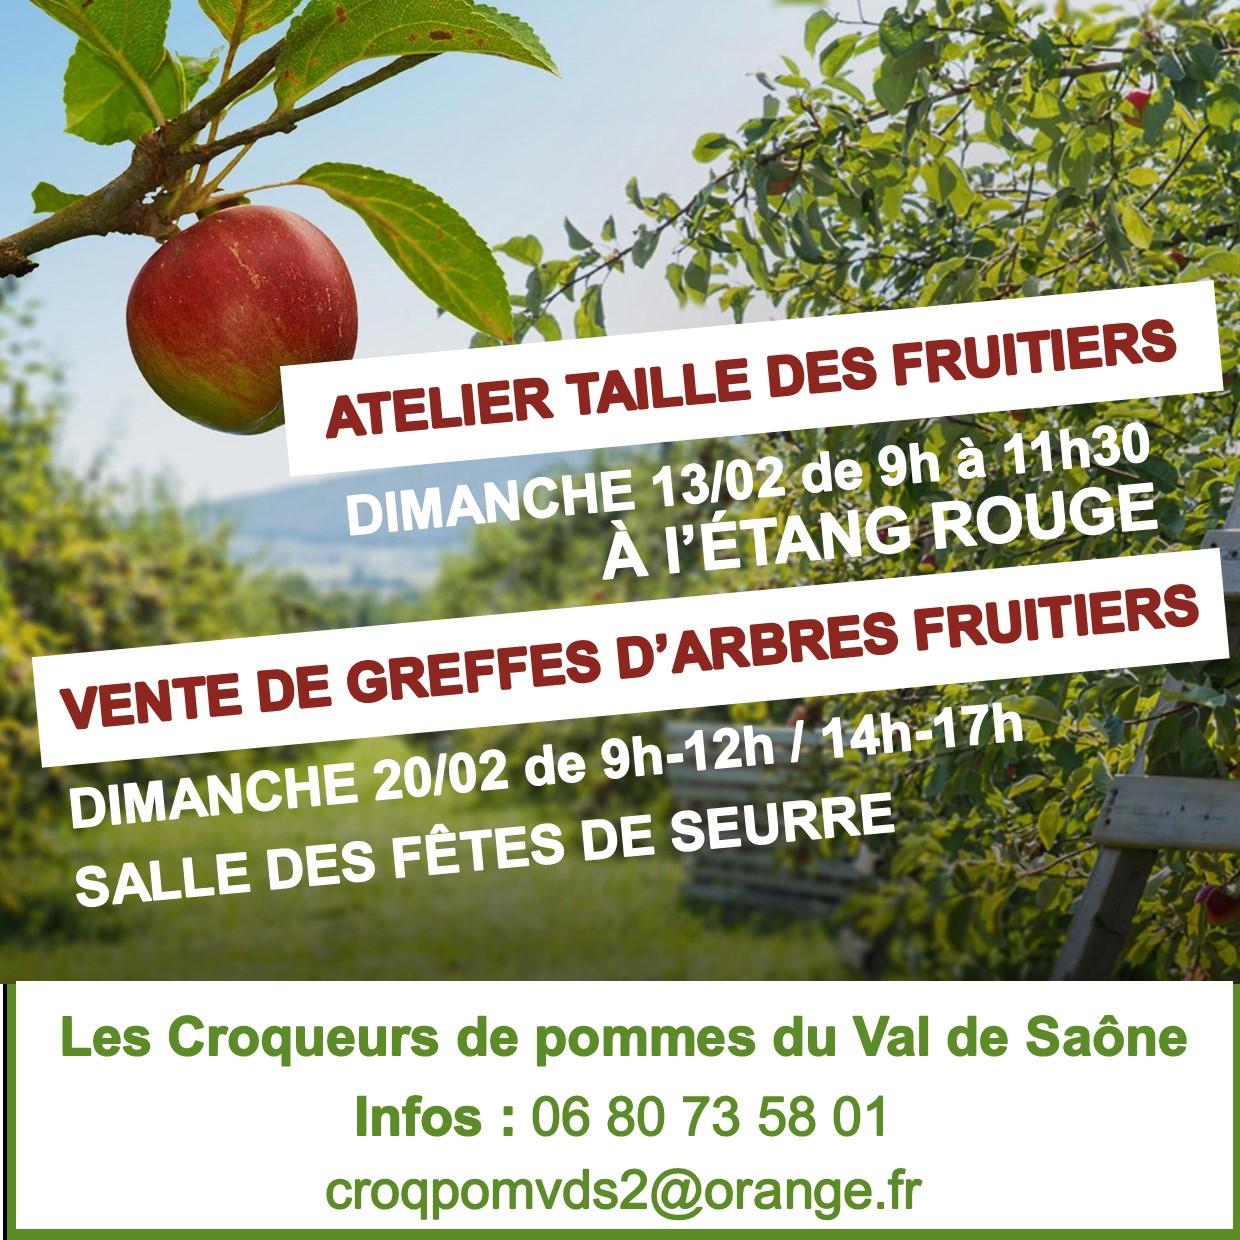 Les croqueurs de pommes du Val de Saône